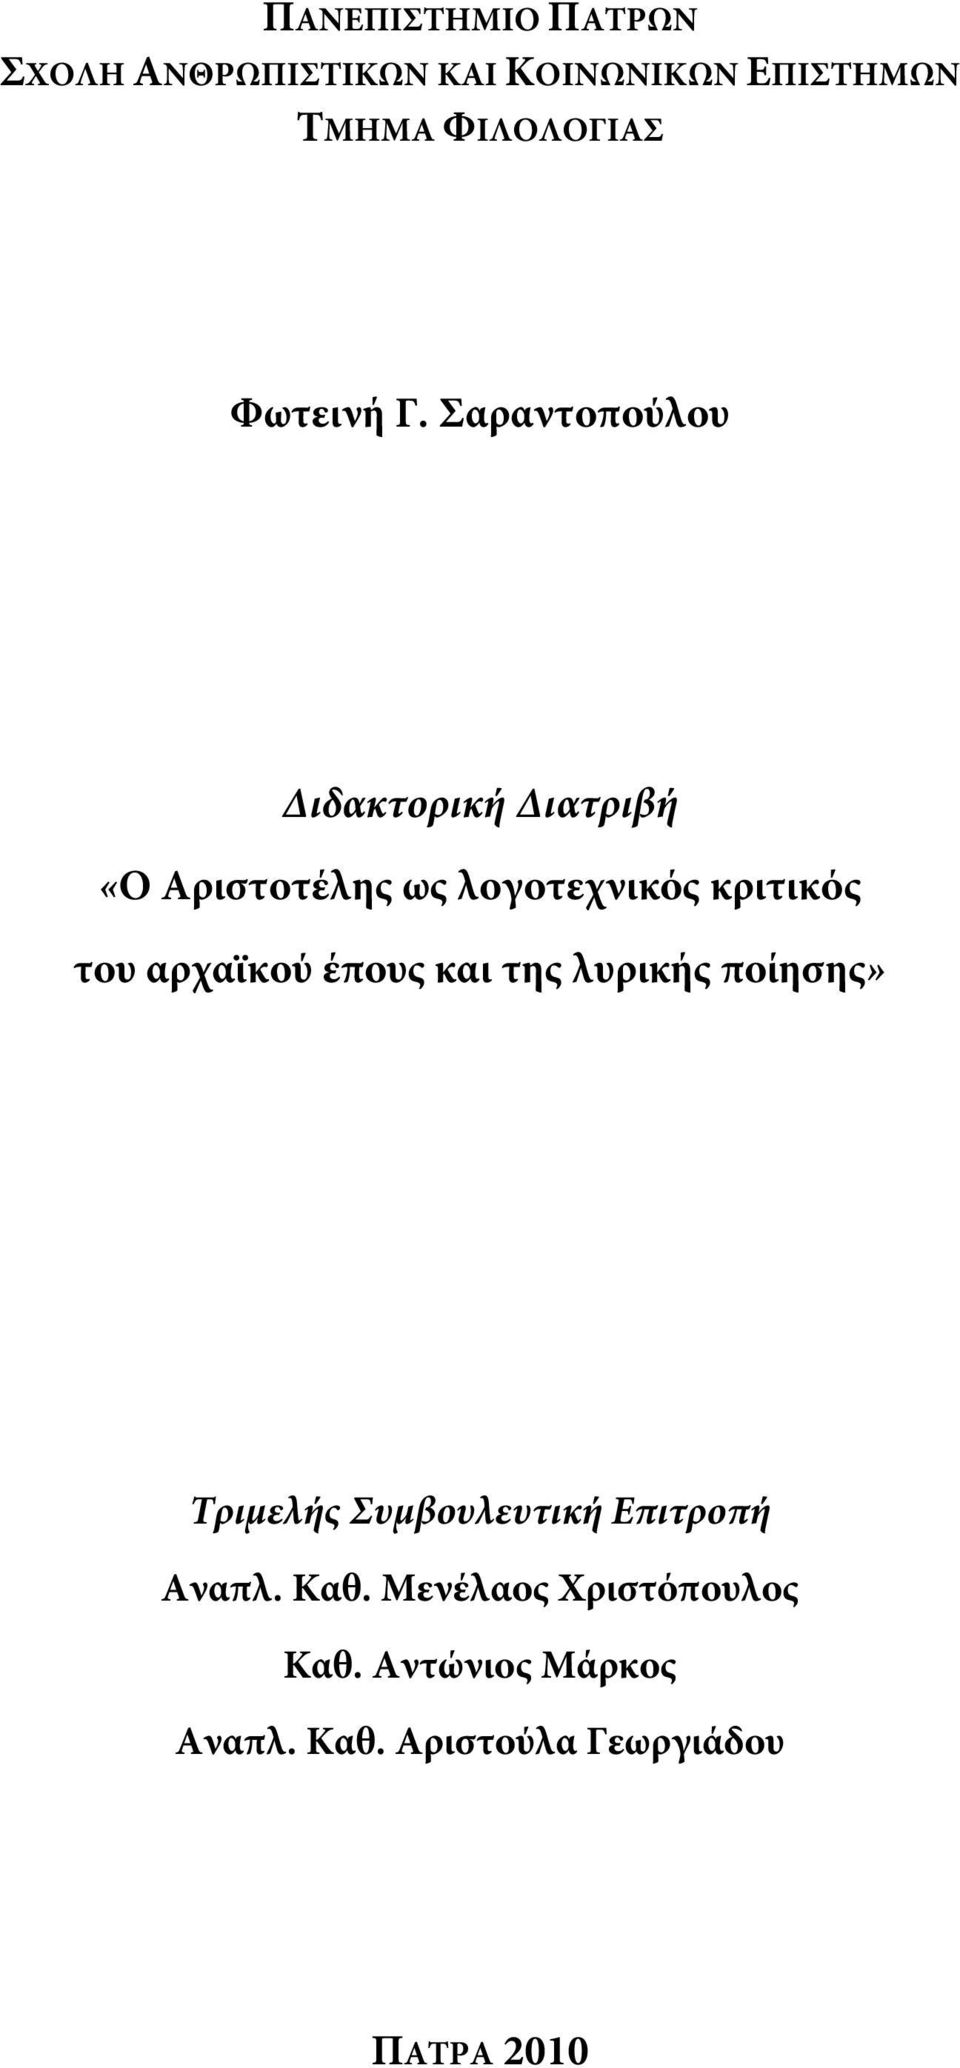 Σαραντοπούλου Διδακτορική Διατριβή «Ο Αριστοτέλης ως λογοτεχνικός κριτικός του